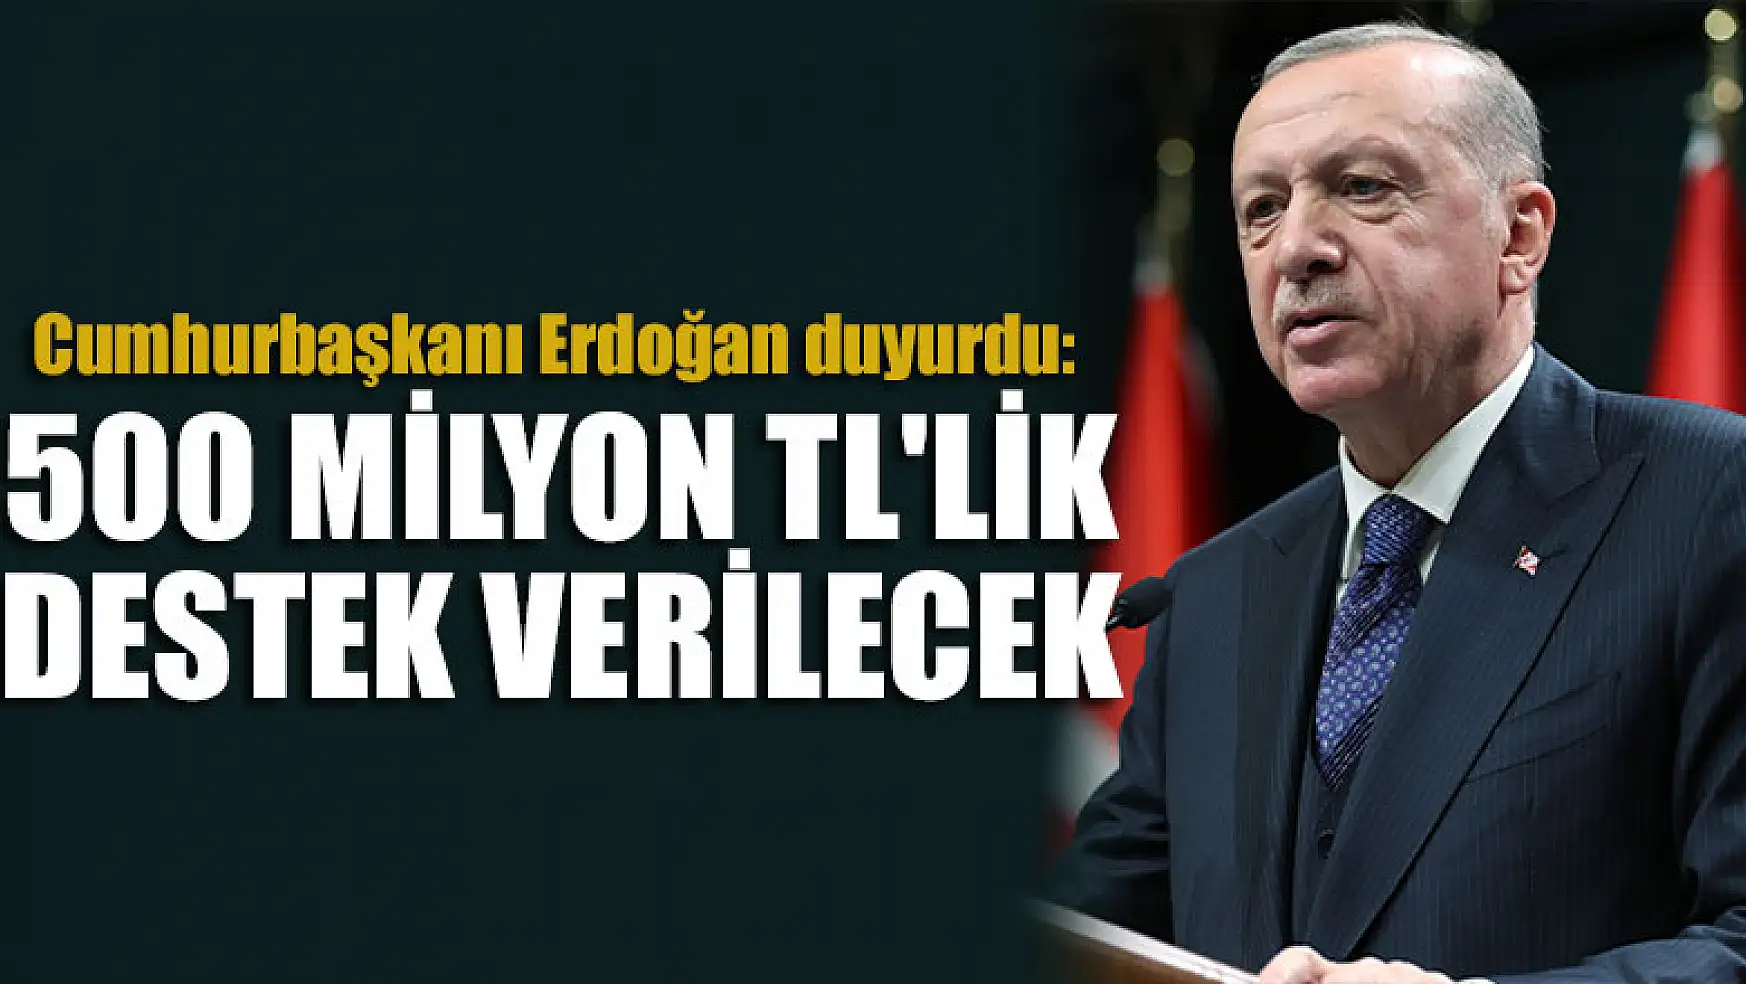 Cumhurbaşkanı Erdoğan: 500 milyon TL'lik destek verilecek